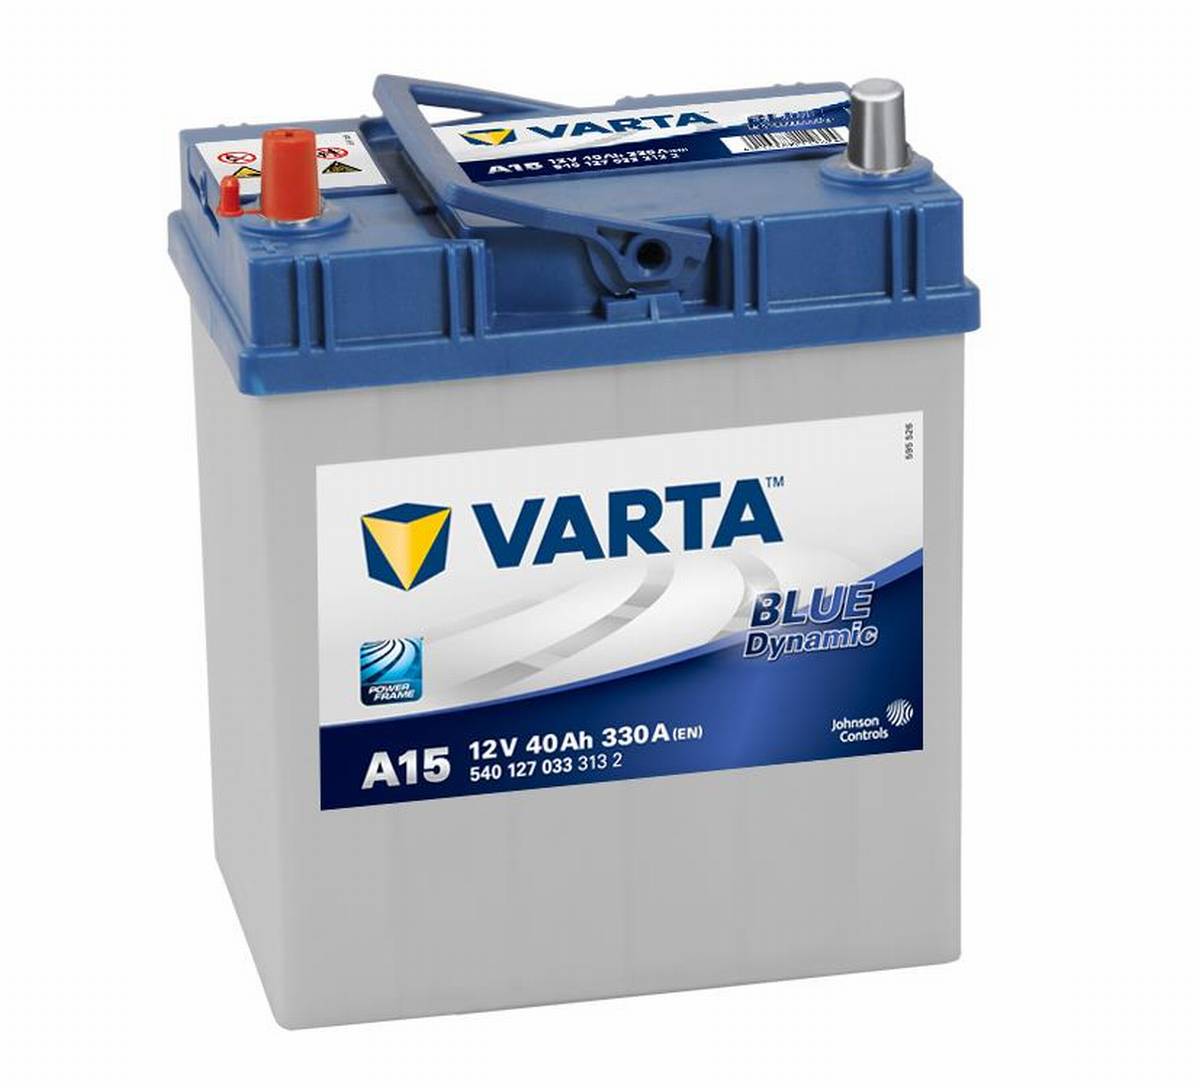 VARTA A15 Blue Dynamic 12V 40Ah 330A Autobatterie 540 127 033